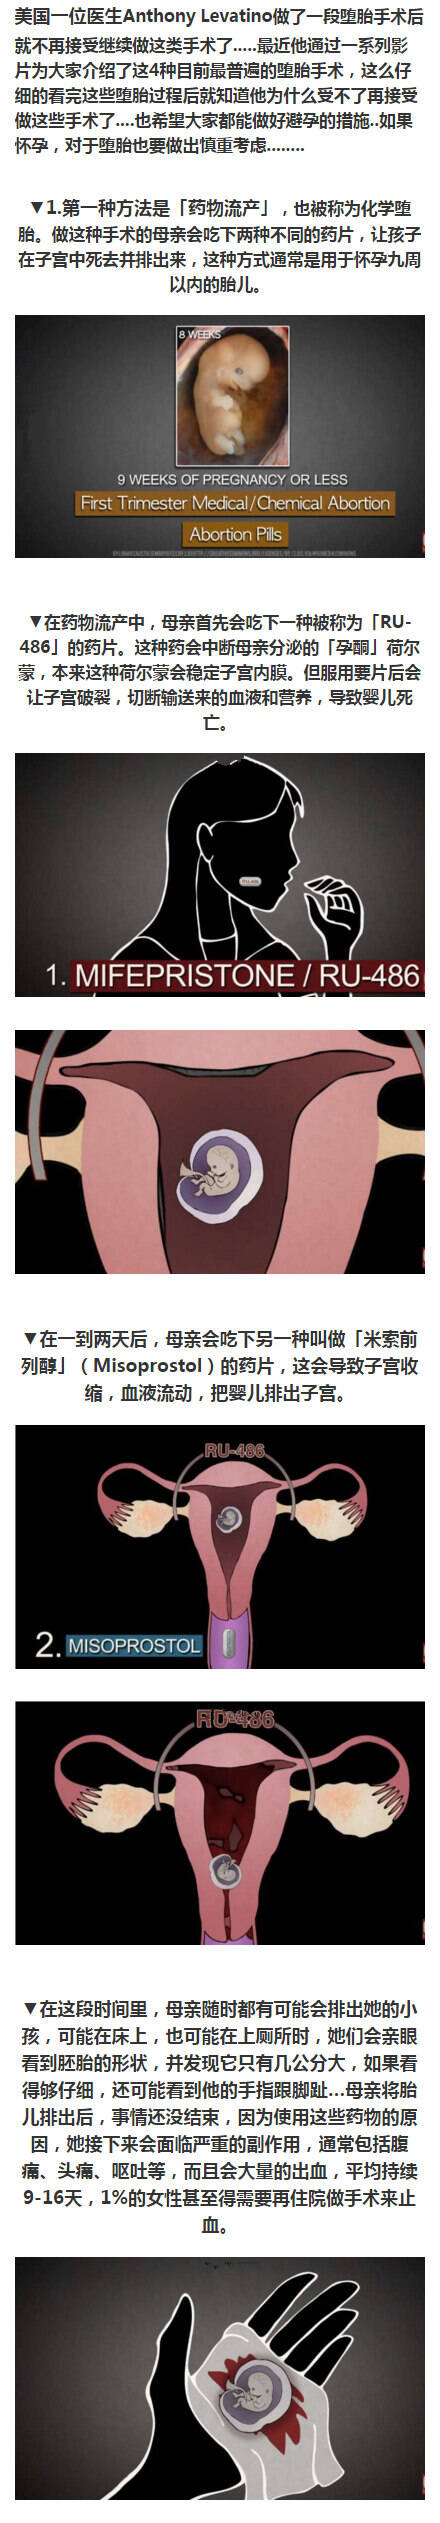 4种目前最普遍的堕胎手术 看完简直心寒！